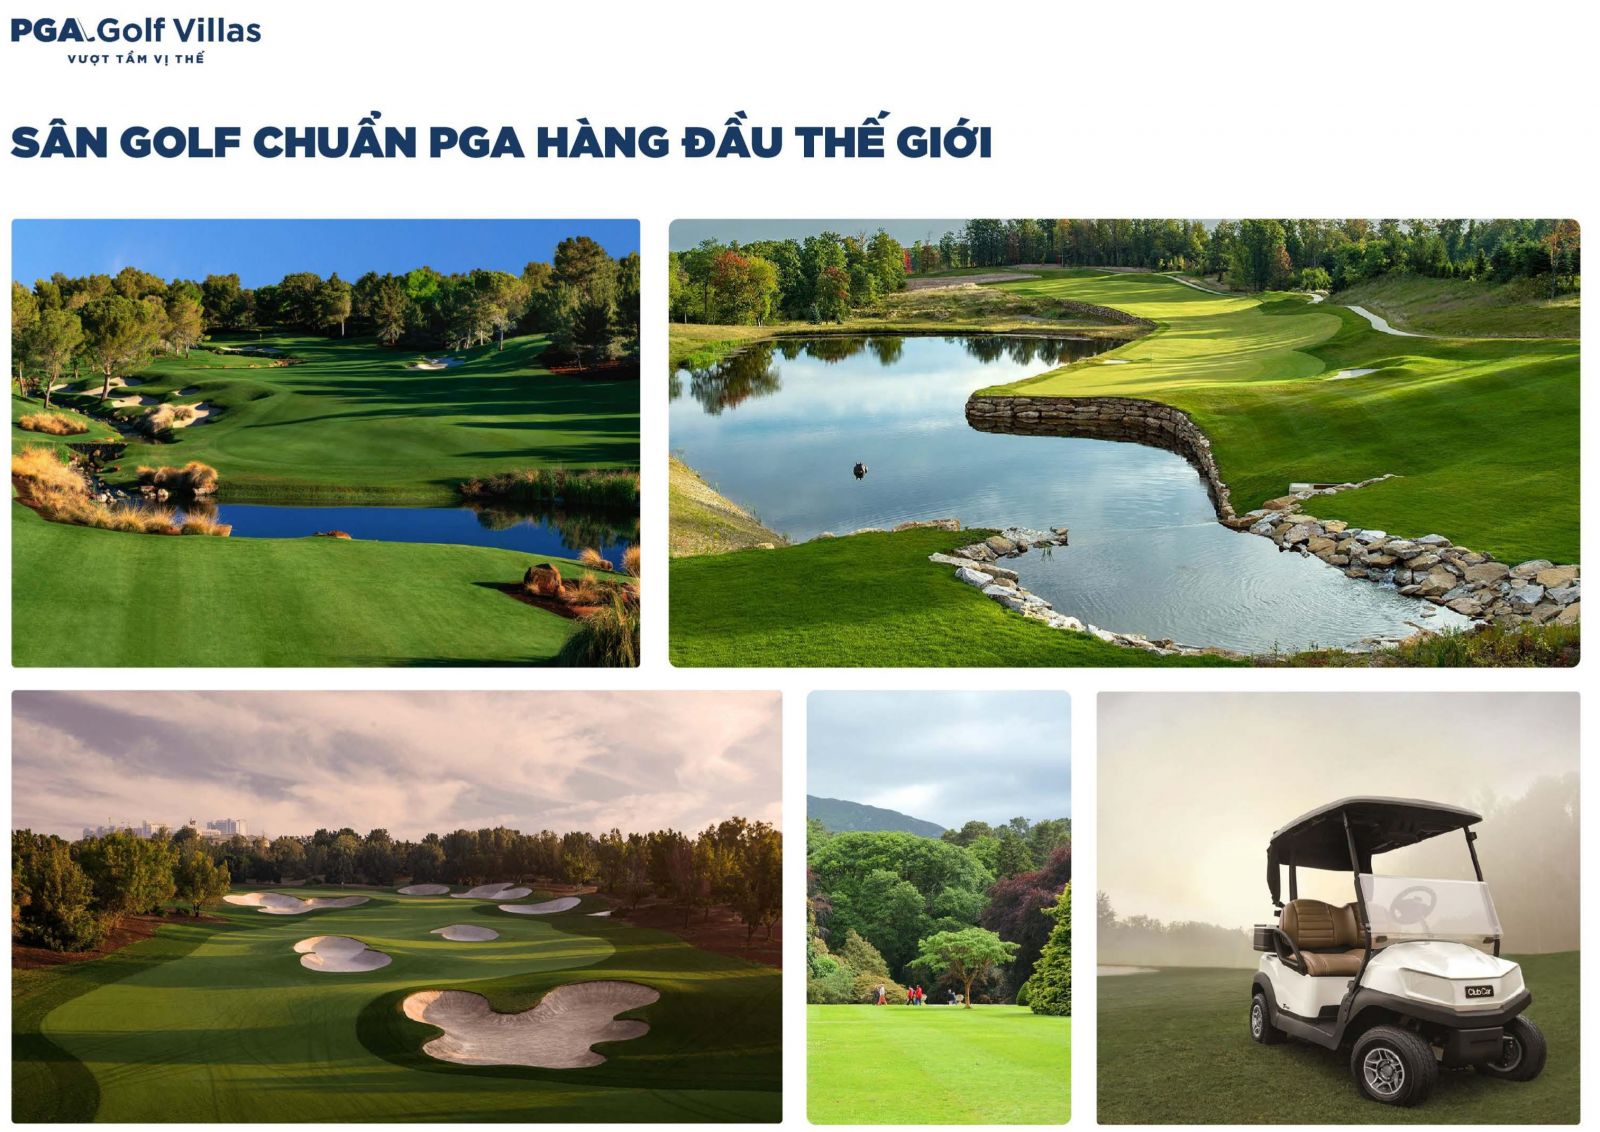 Sân Golf PGA độc quyền tại Việt Nam